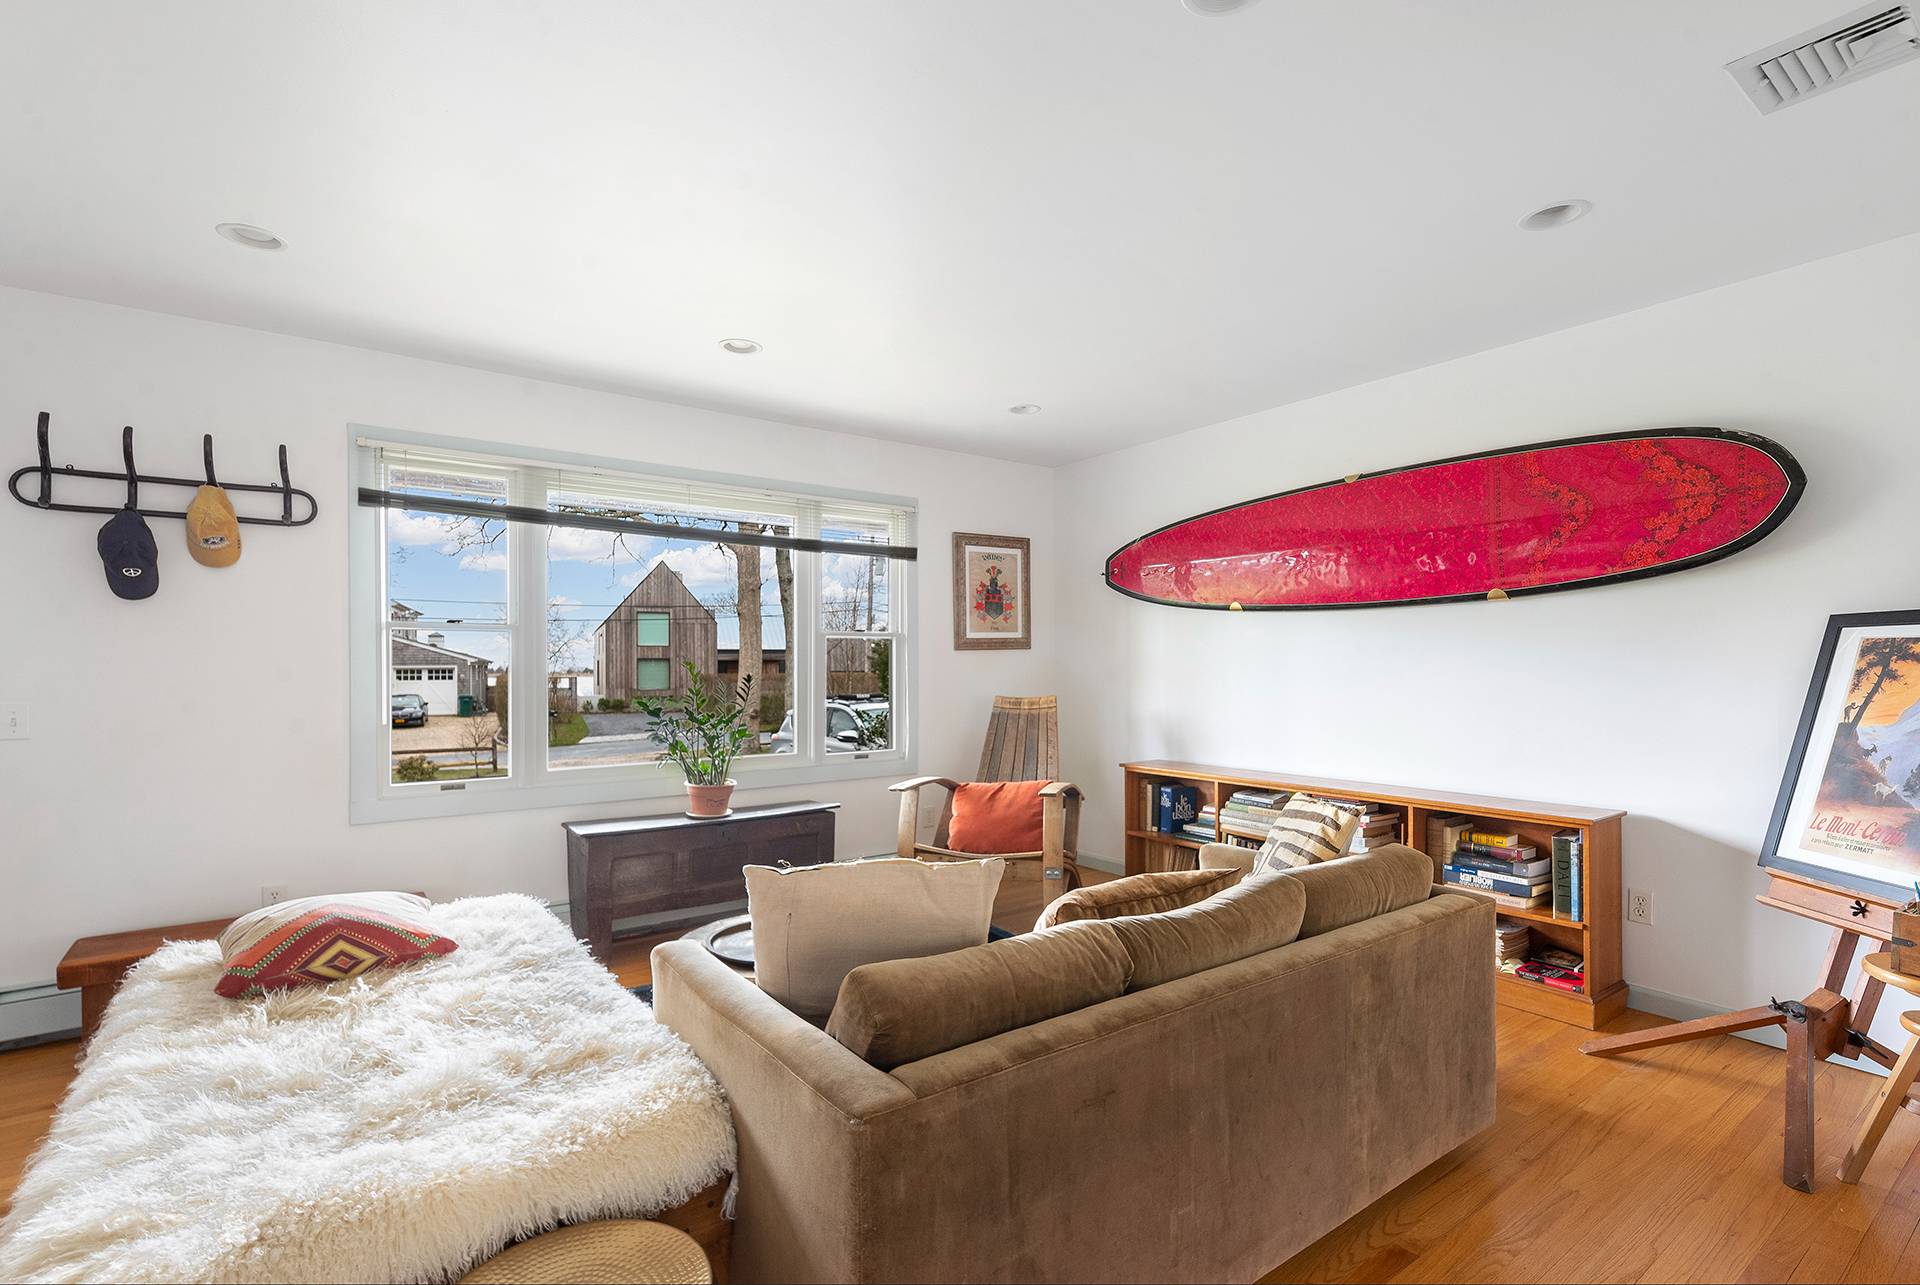 Rental Property at Village Of Sag Harbor, Village Of Sag Harbor, Hamptons, NY - Bedrooms: 4 
Bathrooms: 3  - $38,000 MO.